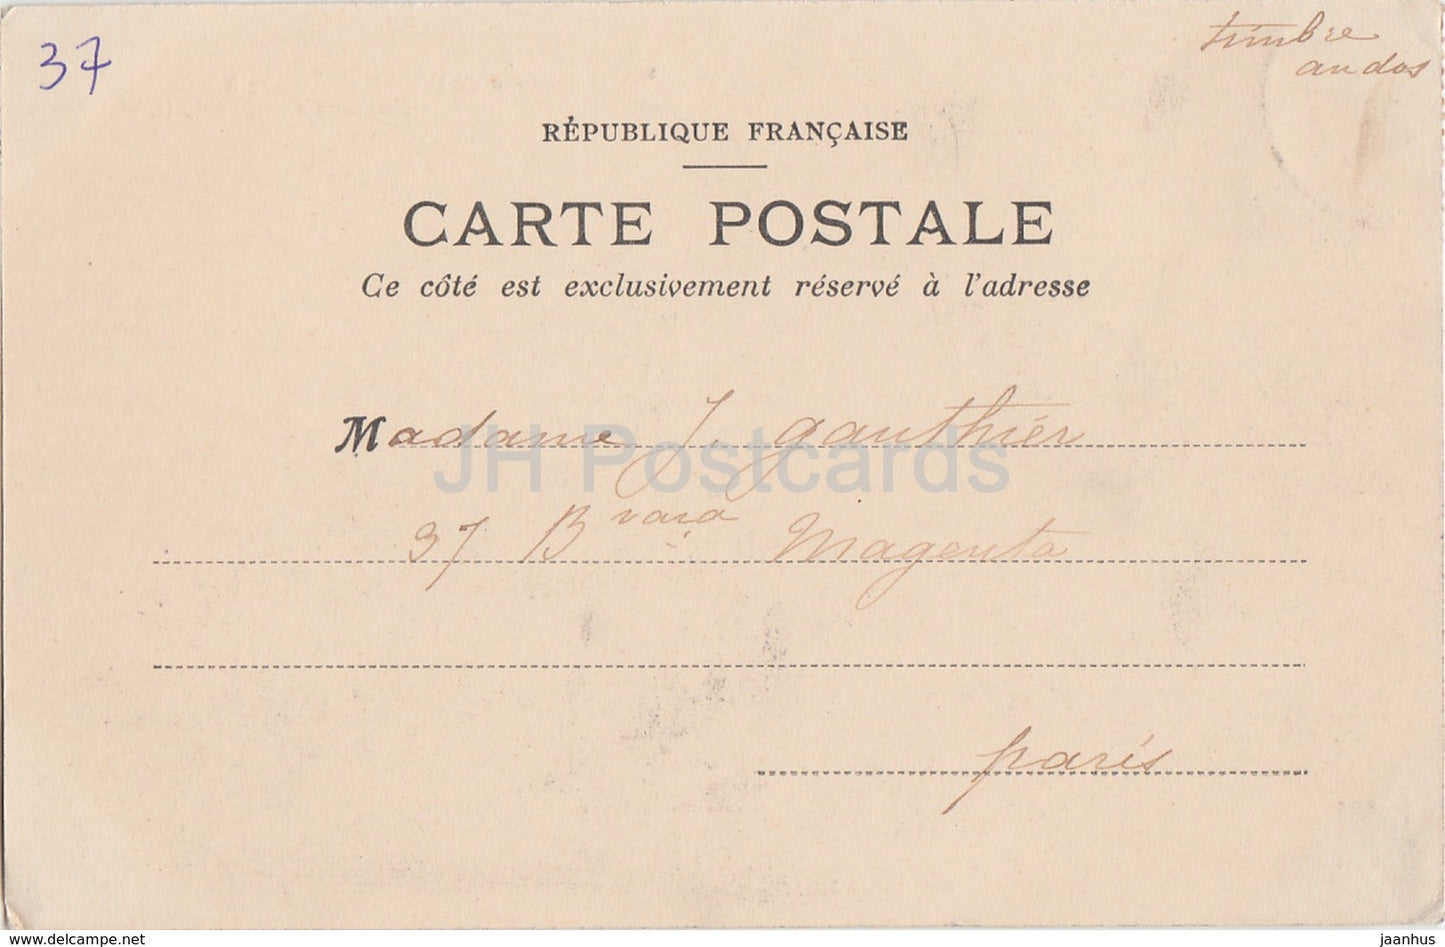 Commune de Nouzilly - Chateau de l'Orfraisiere - castle - old postcard - France - used